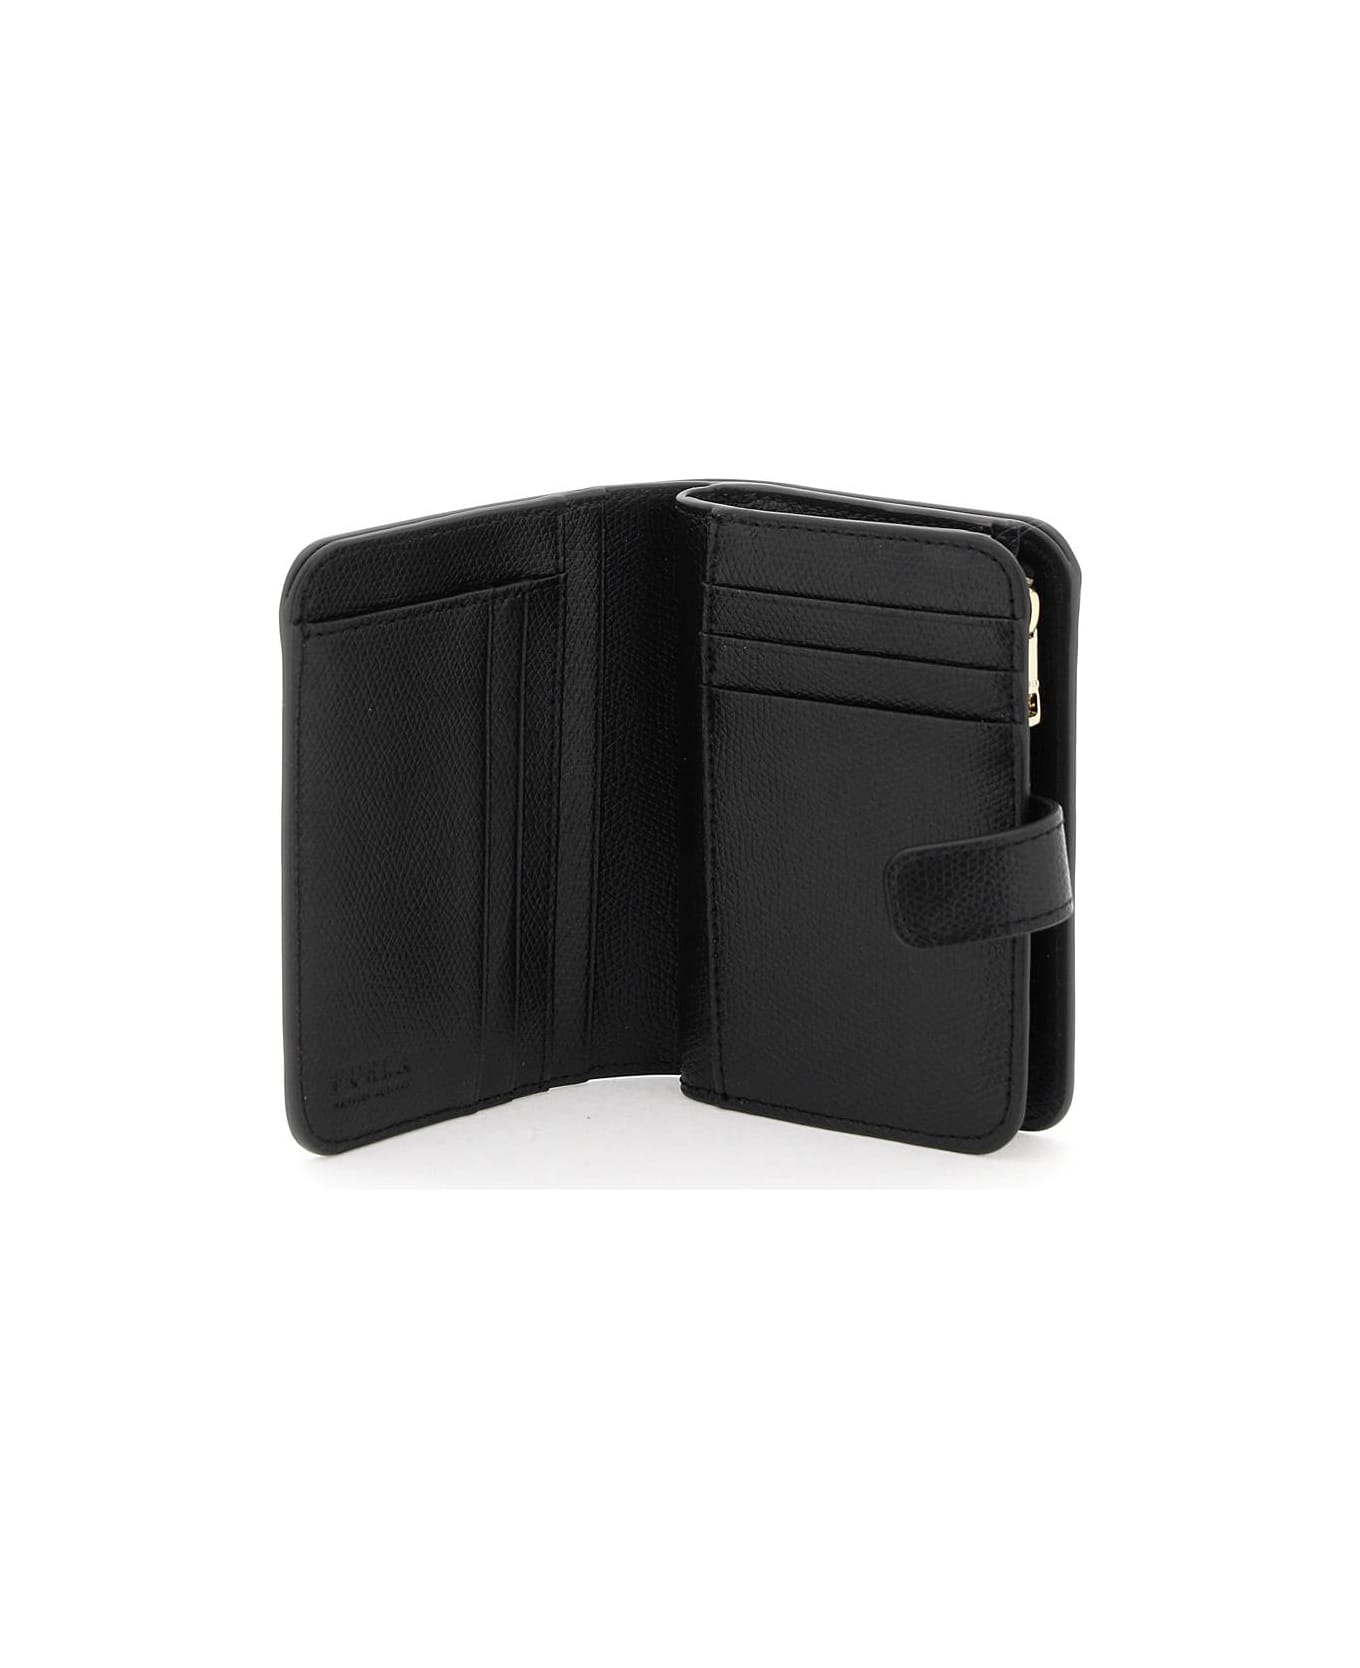 Furla 'camelia' Compact Wallet - Nero 財布